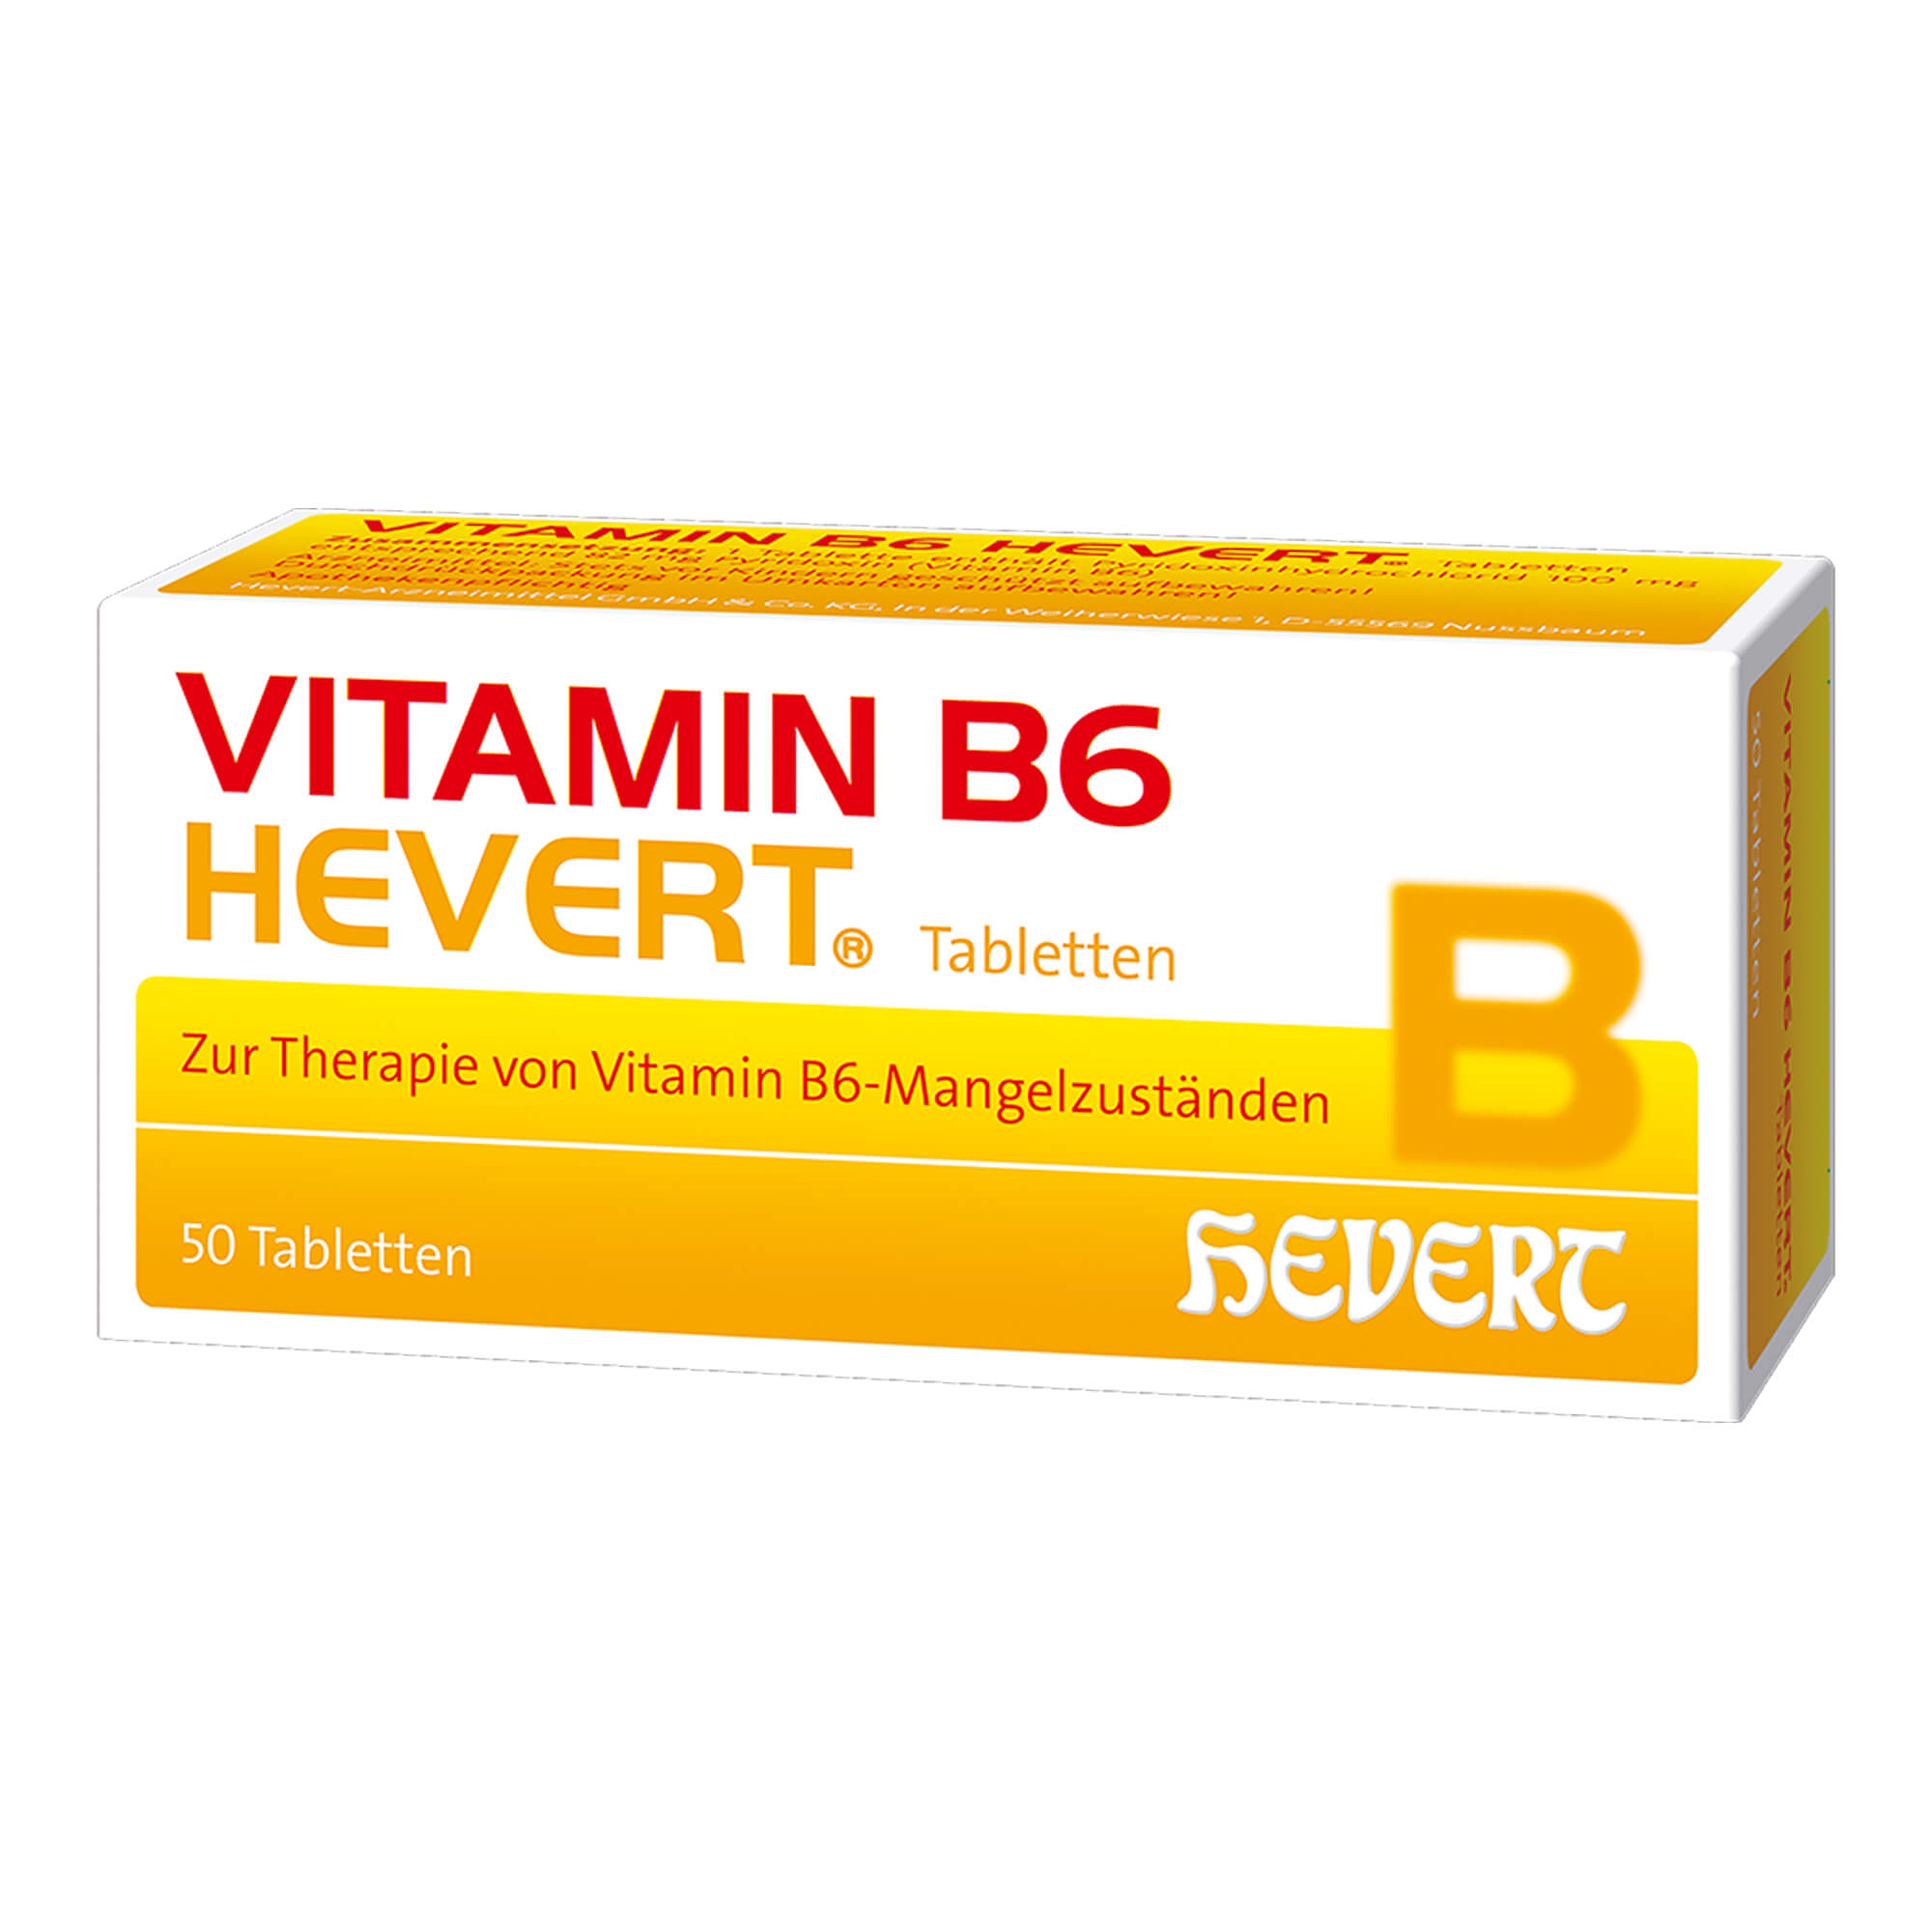 Für Erwachsene. Zur Behandlung einer peripheren Neuropathie (Nervenentzündung) infolge eines durch Arzneimitteleinnahme verursachten Vitamin B6-Mangels.